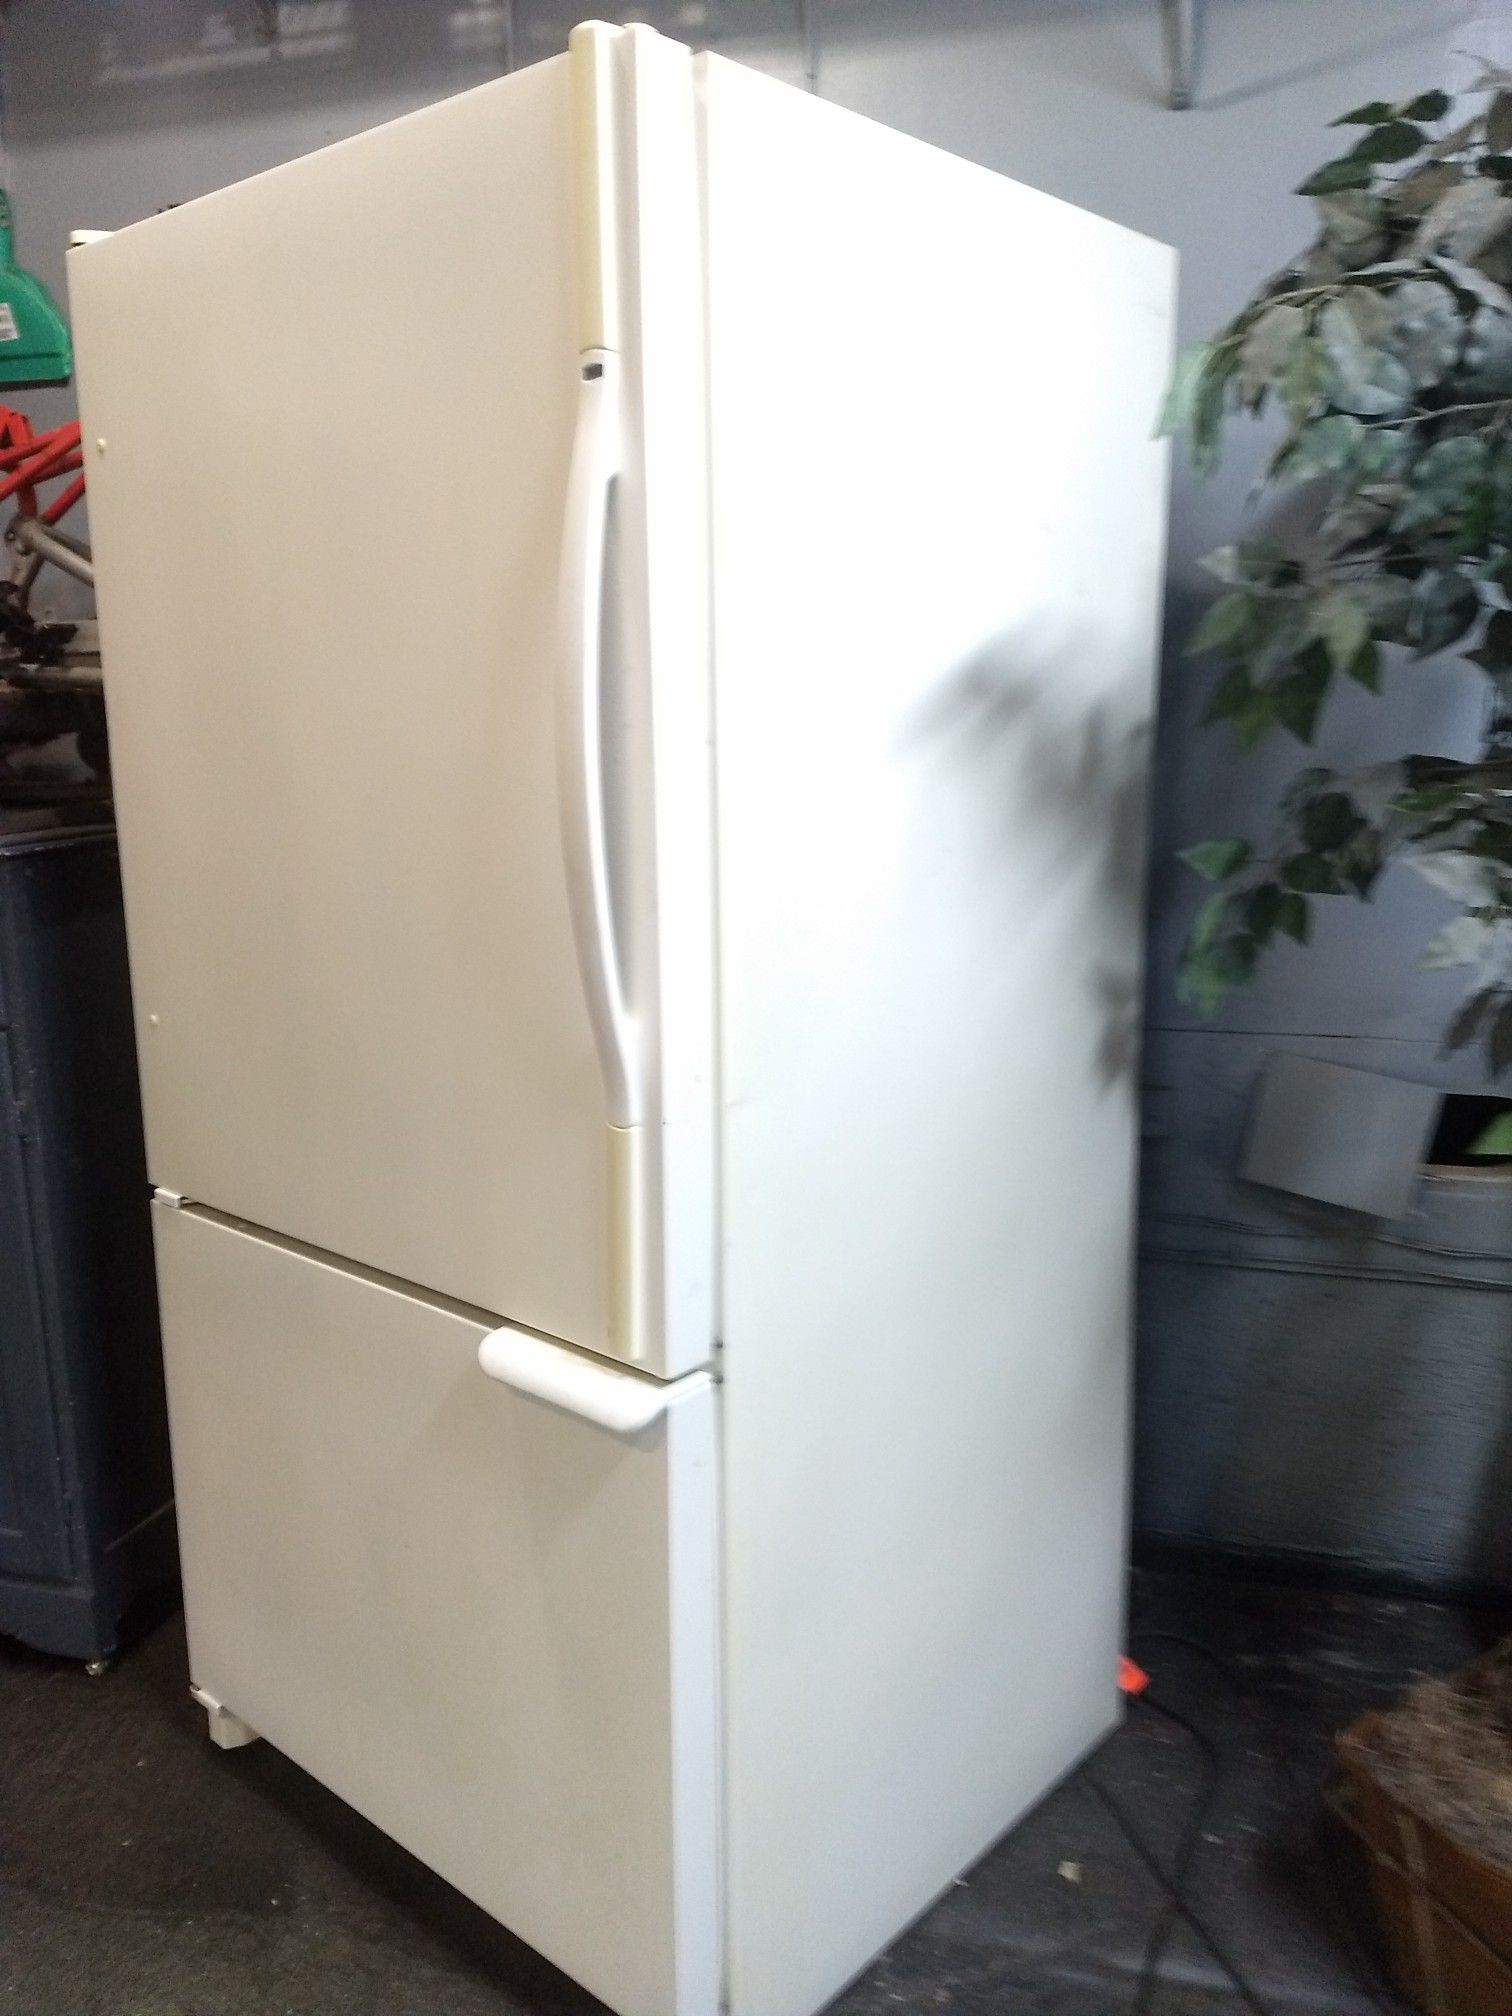 Amana full size bottom freezer refrigerator